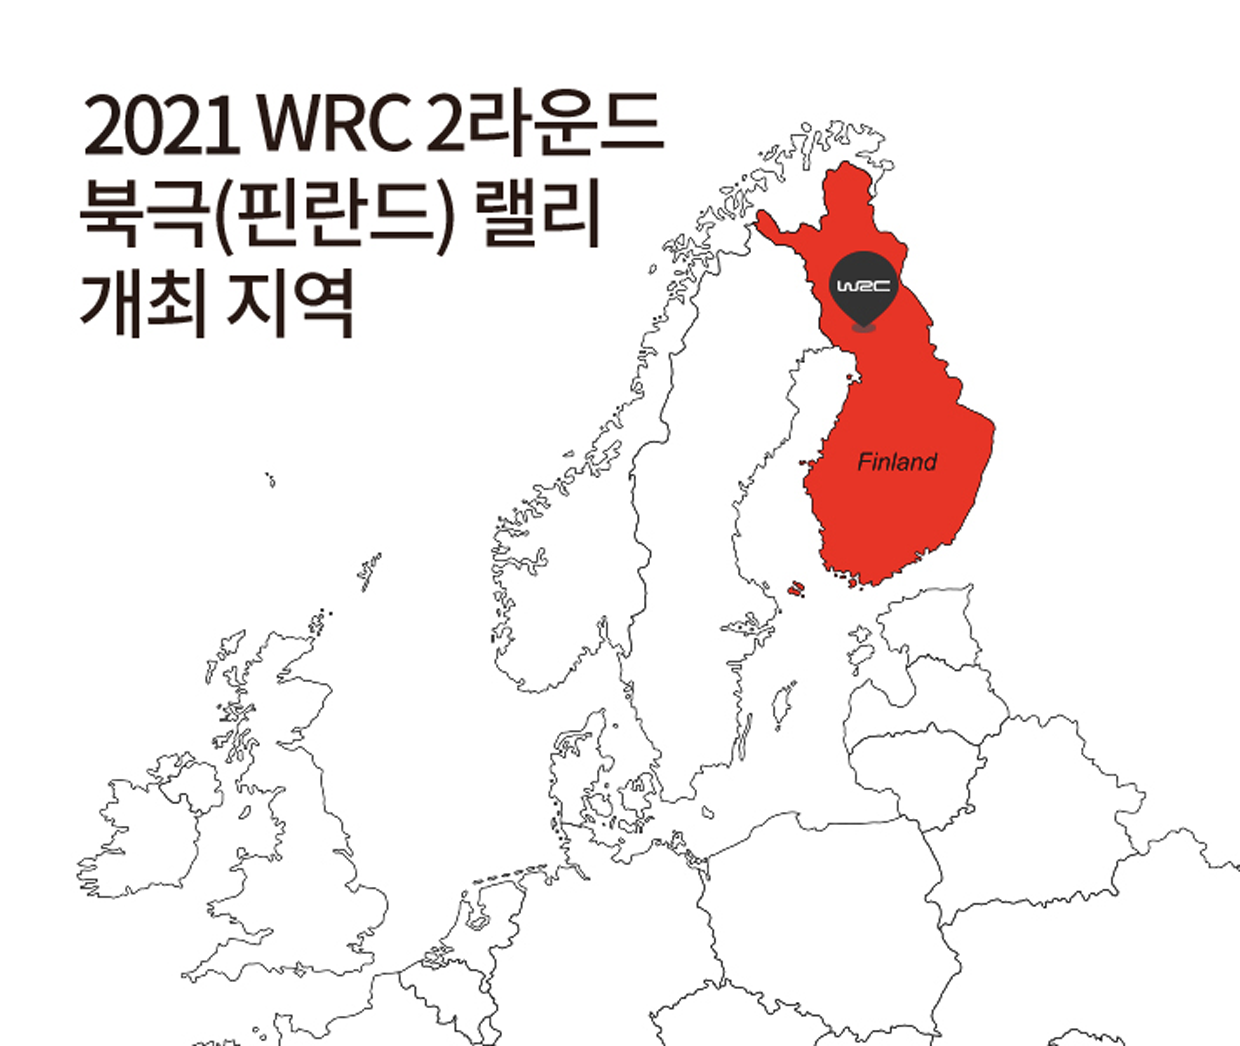 2021 WRC 2라운드 북극 랠리가 열리는 핀란드 지도